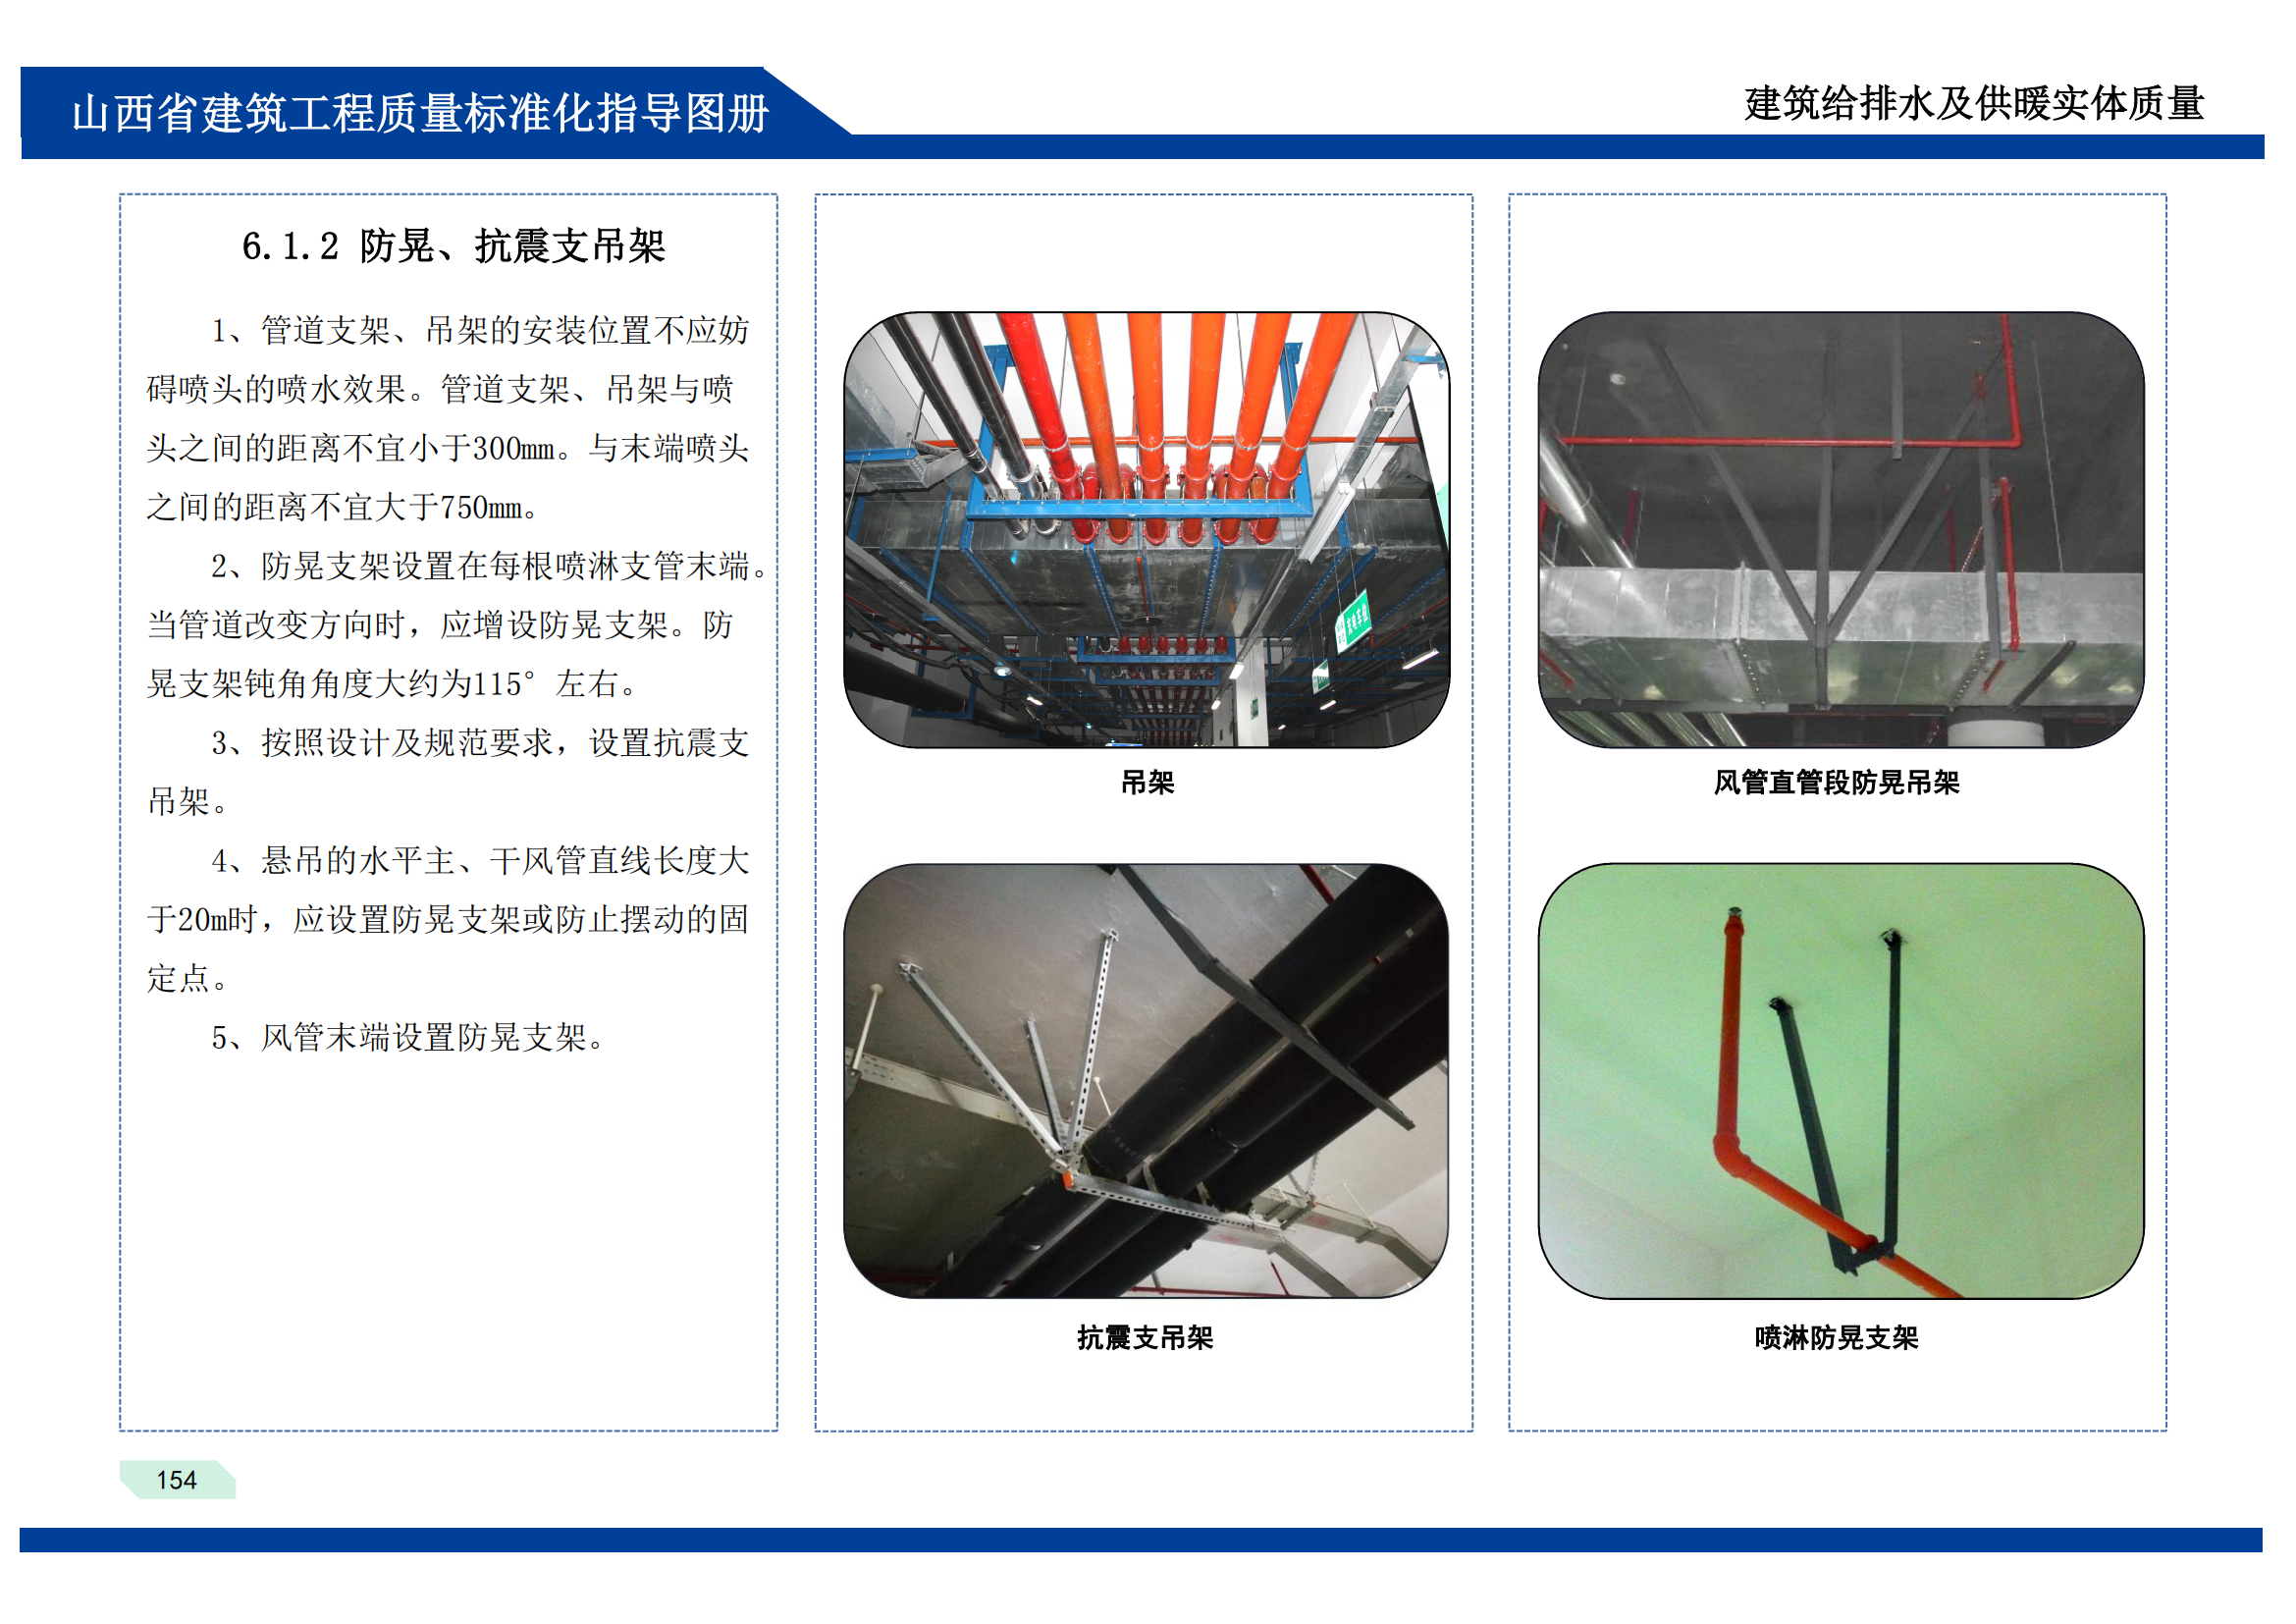 建筑工程质量标准化指导图册-机电安装部分插图(8)